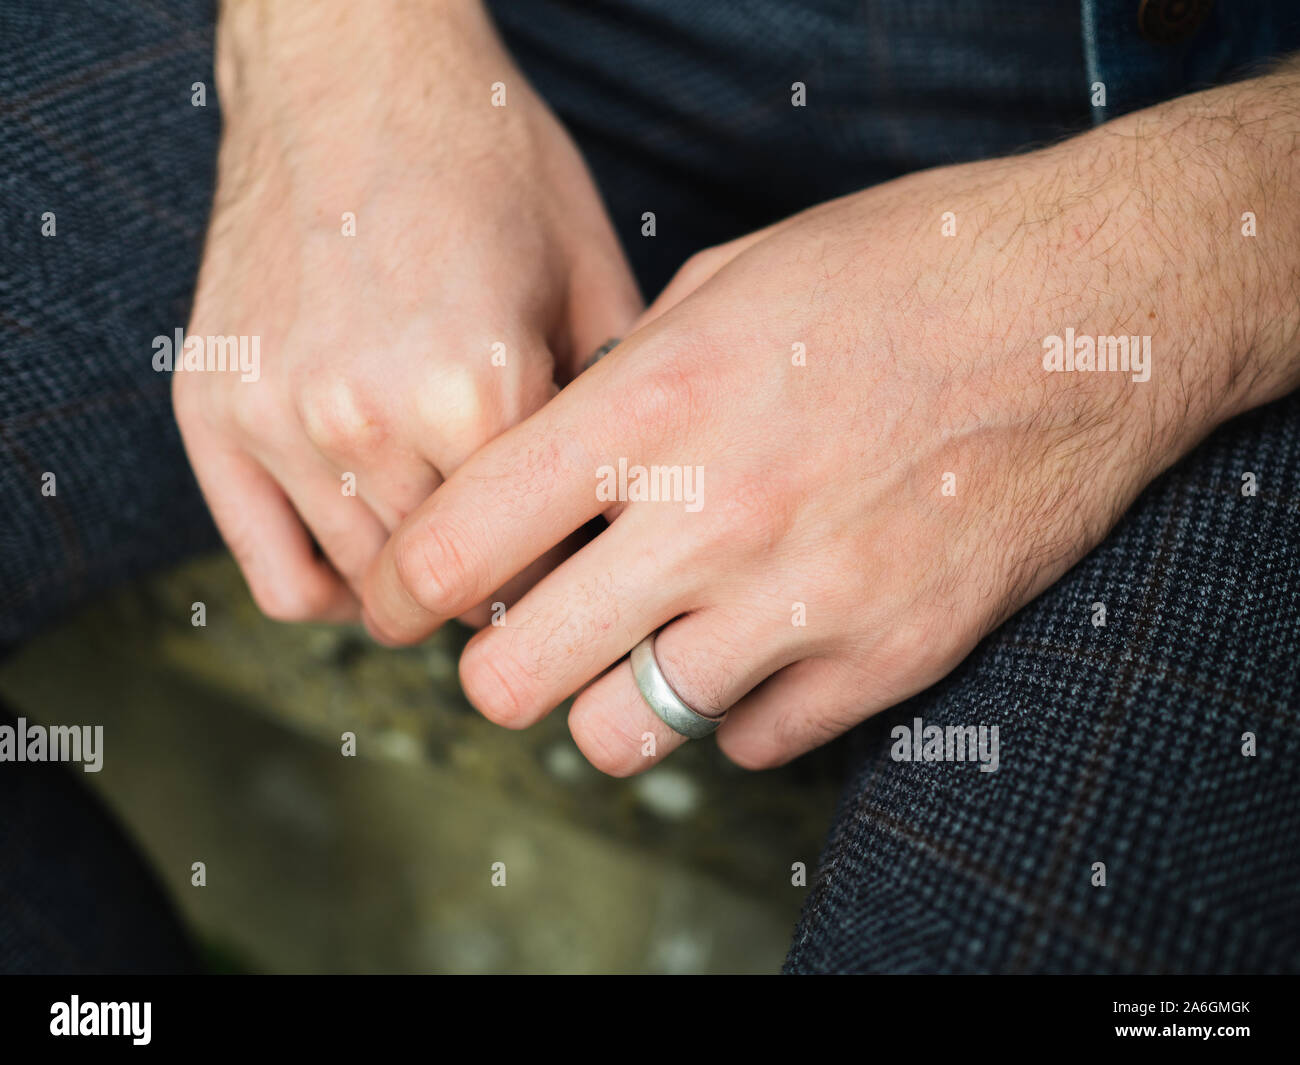 Giovane Maschio 20-25 anni isolato mani con anello sulla sinistra anello dito, seduto con le mani tra le gambe. Nessun volto visibile. Foto Stock